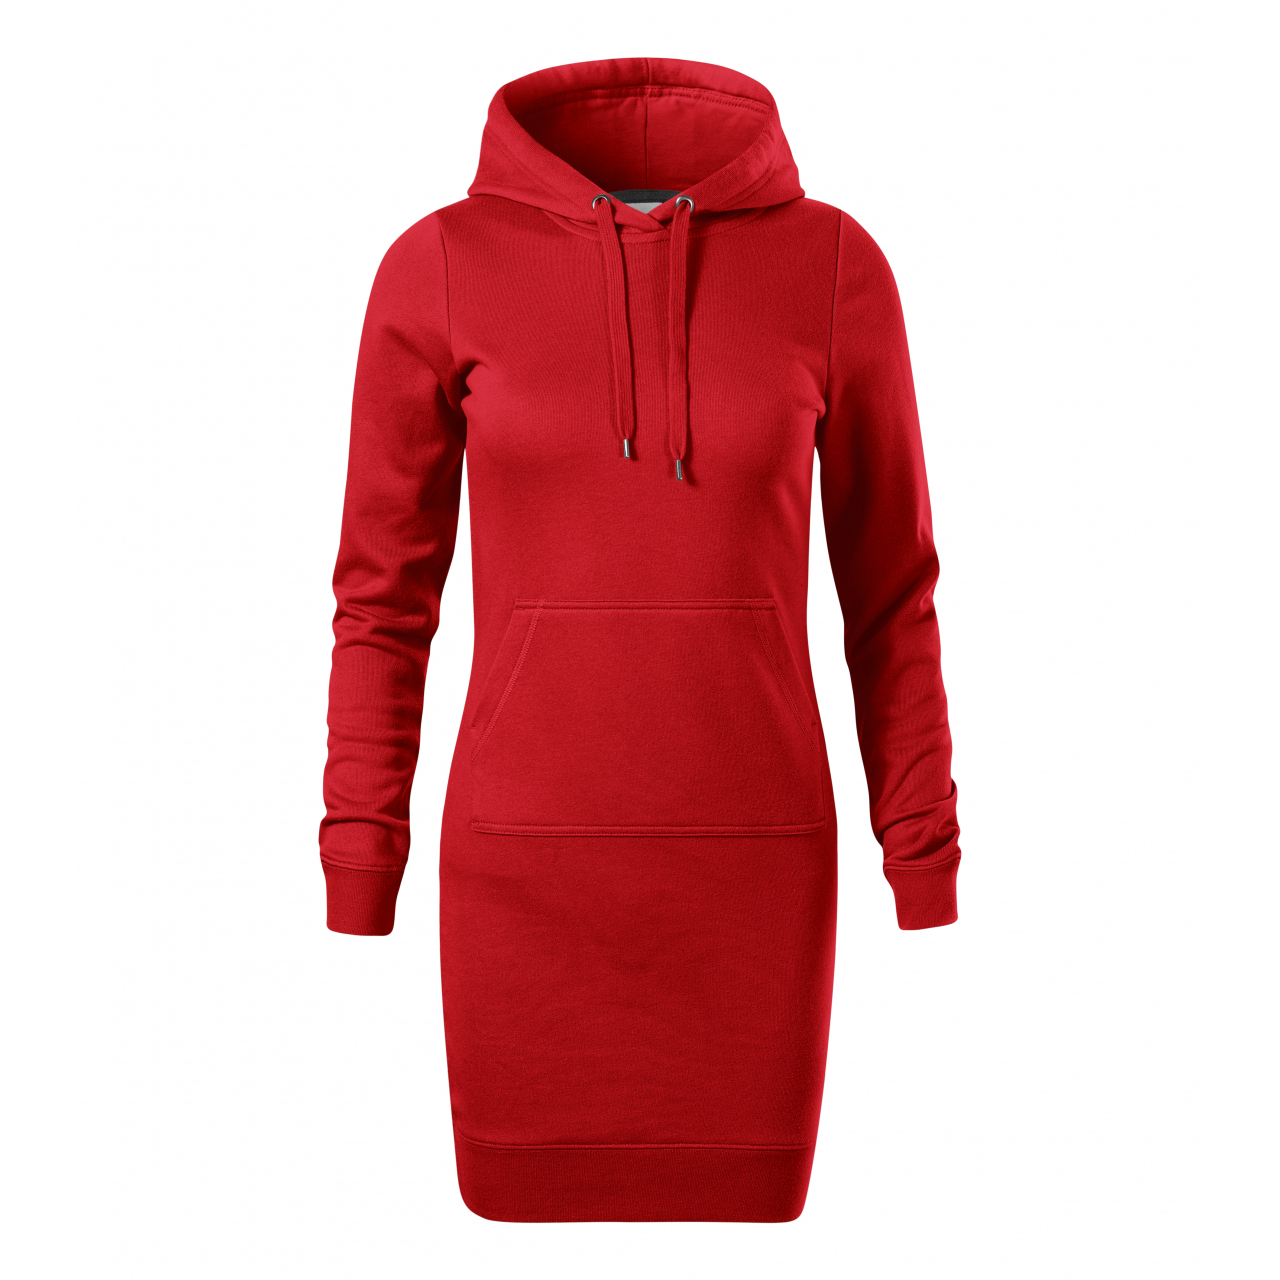 Šaty dámské Malfini Snap - červené, XS